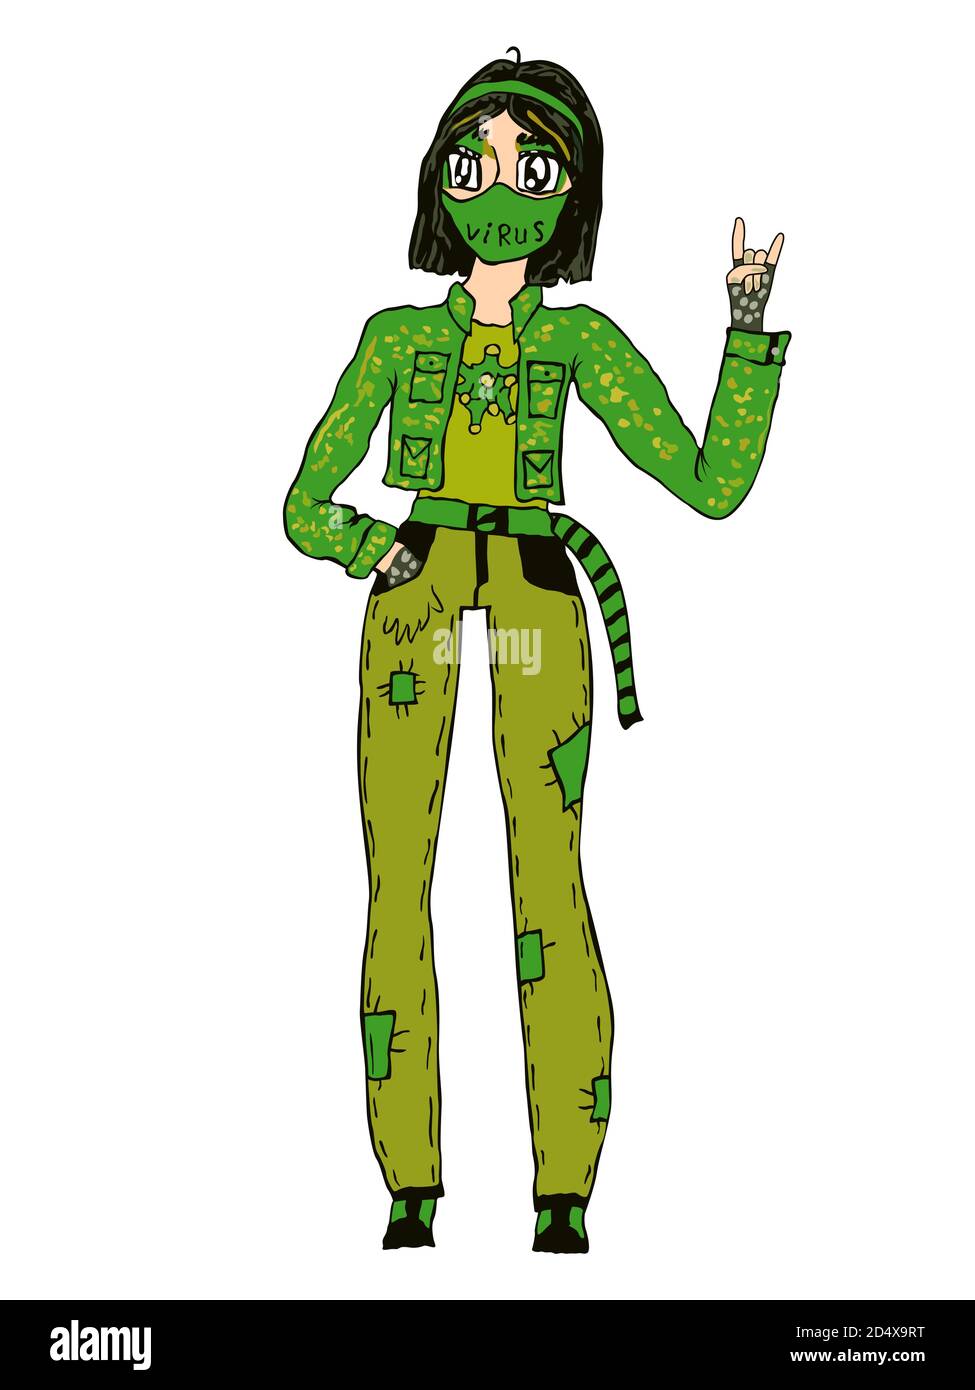 Niña de dibujos animados en máscara protectora y ropa verde, simboliza la lucha con Covid-19, vector hecho como dibujo de niño Ilustración del Vector